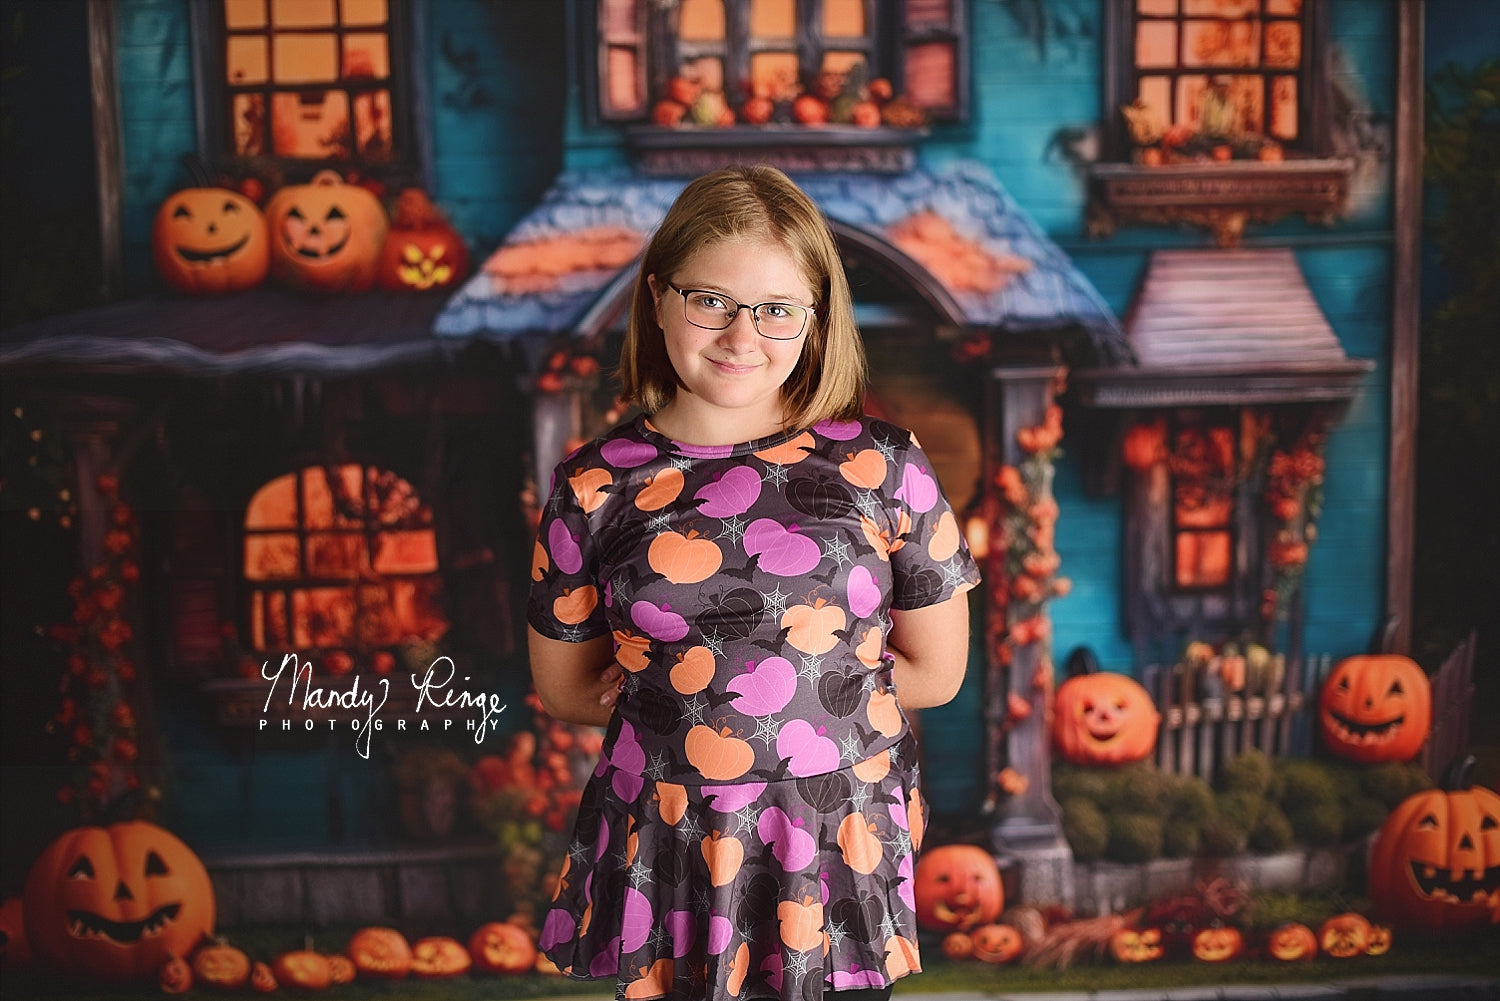 Kate Citrouille Halloween Maison Jaune Toile de fond conçue par Mandy Ringe